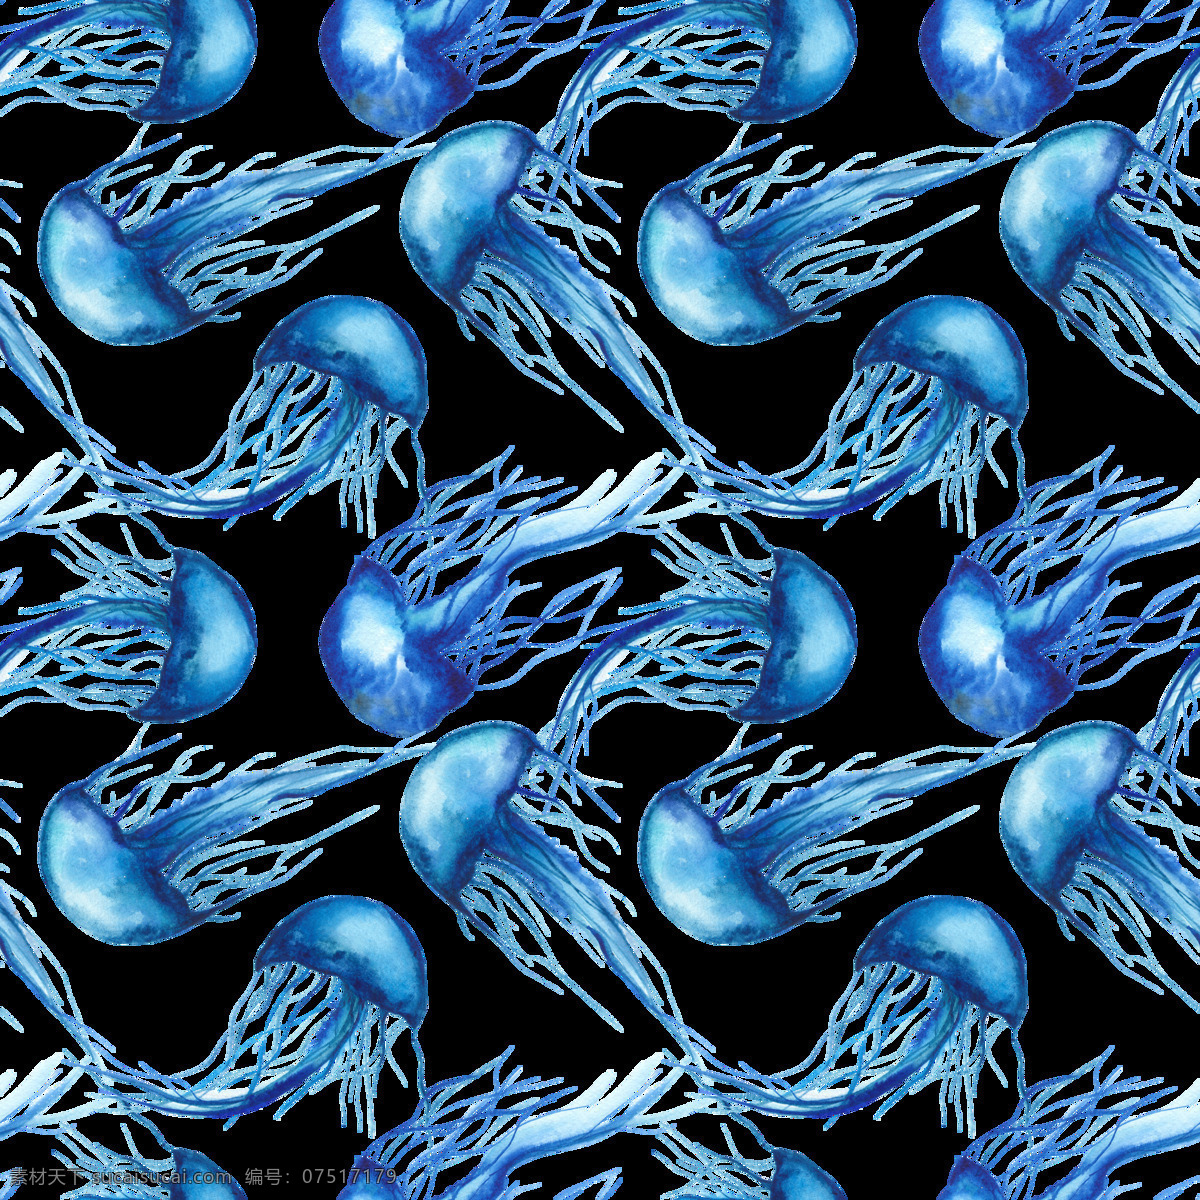 海洋 主题 装饰 图案 水母 海洋生物 鲸鱼 淡蓝色水彩画 水彩元素 手绘涂鸦 海洋元素 海洋主题装饰 底纹边框 背景底纹